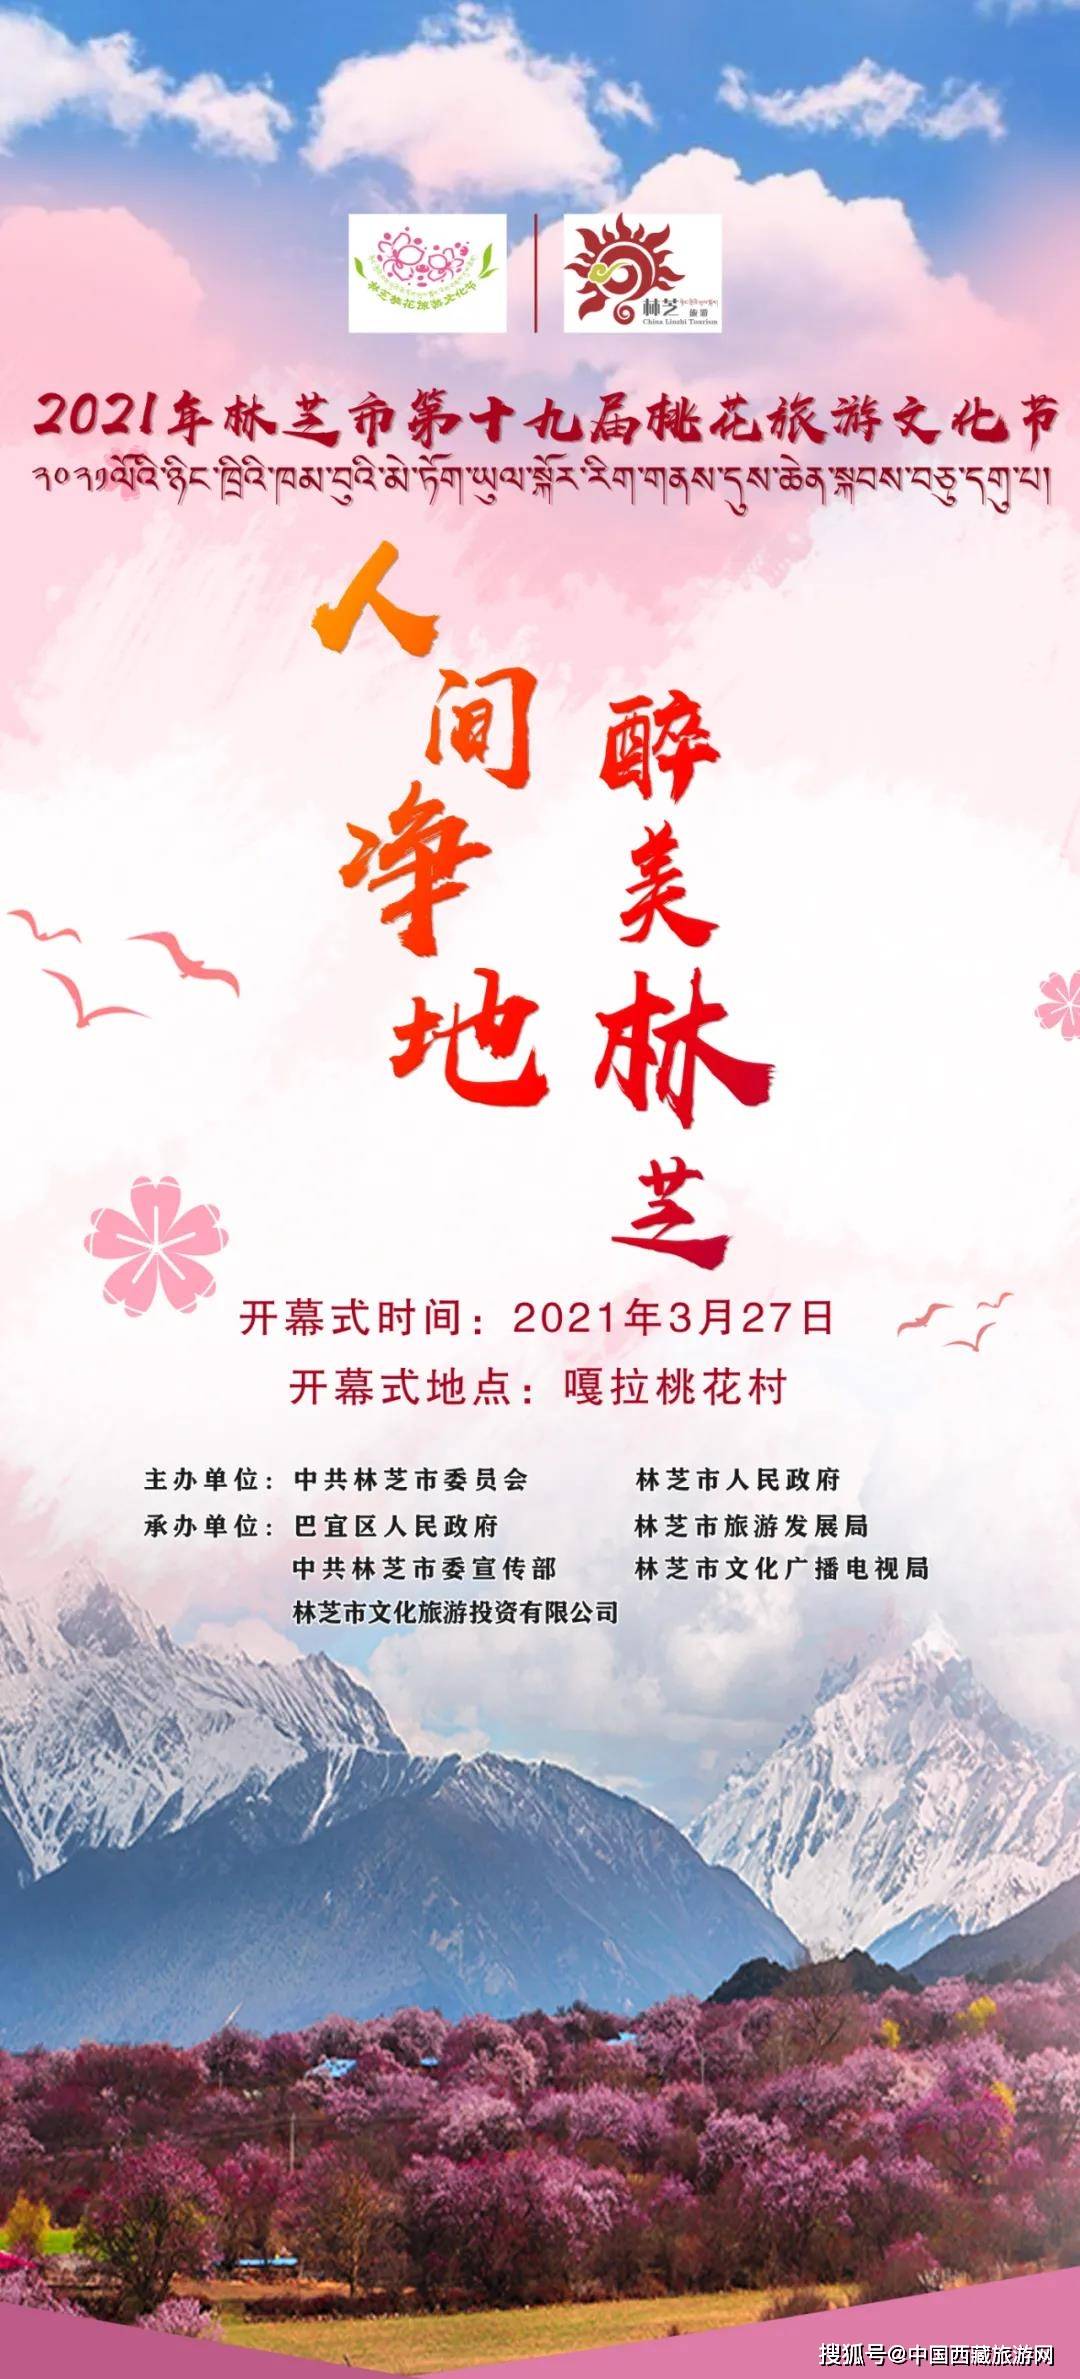 最新官宣_2021林芝市桃花旅游文化节开幕时间及地点